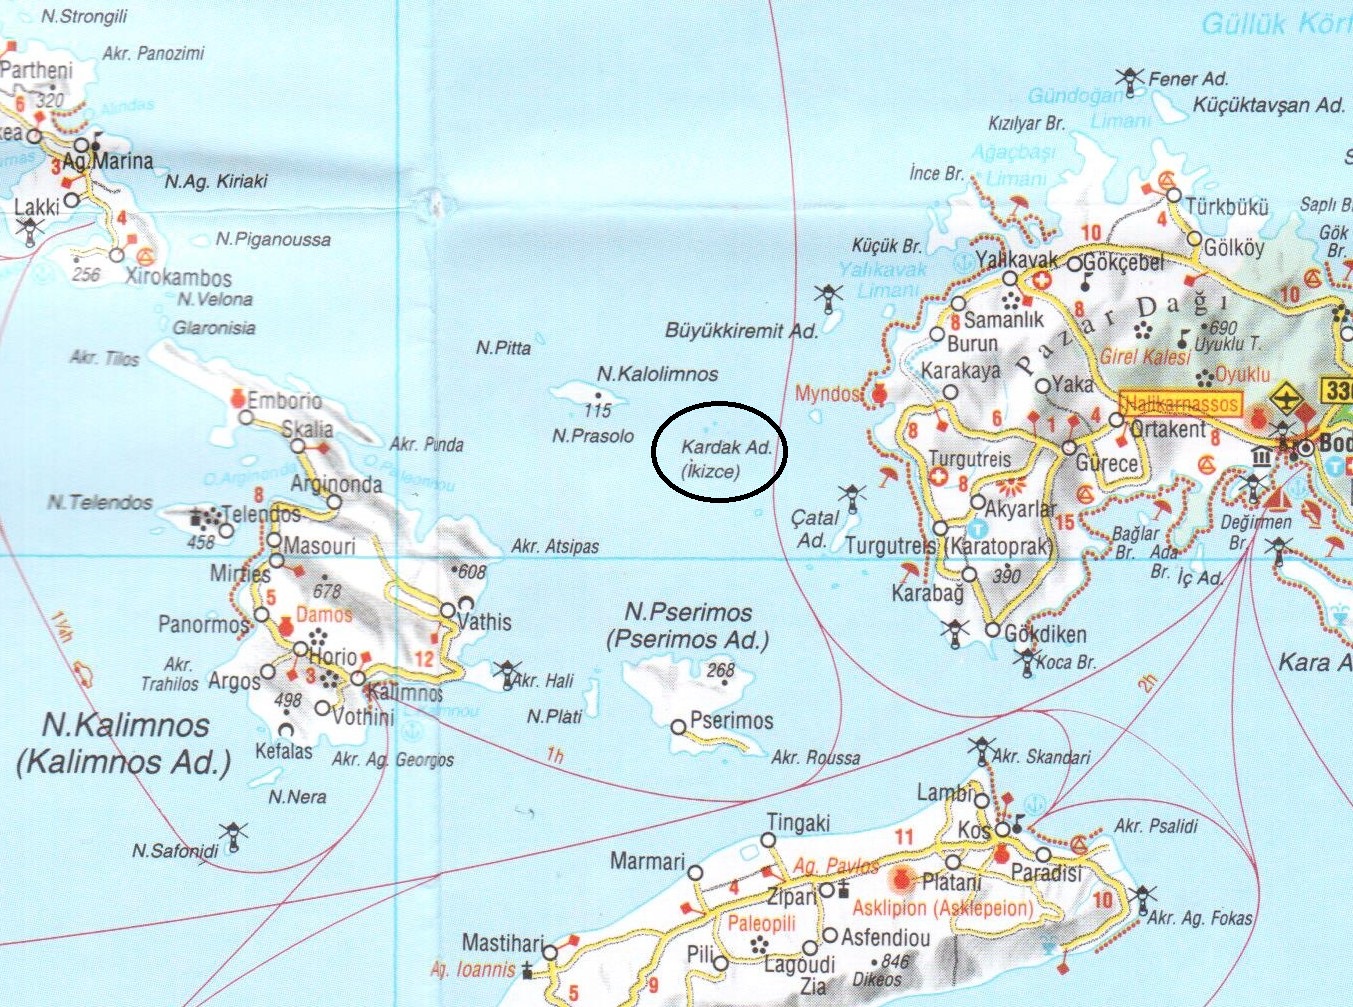  Το μεγάλο κόλπο των Τούρκων για τα νησιά του Αιγαίου και μερικοί πολύ χρήσιμοι για τον πρωθυπουργό χάρτες